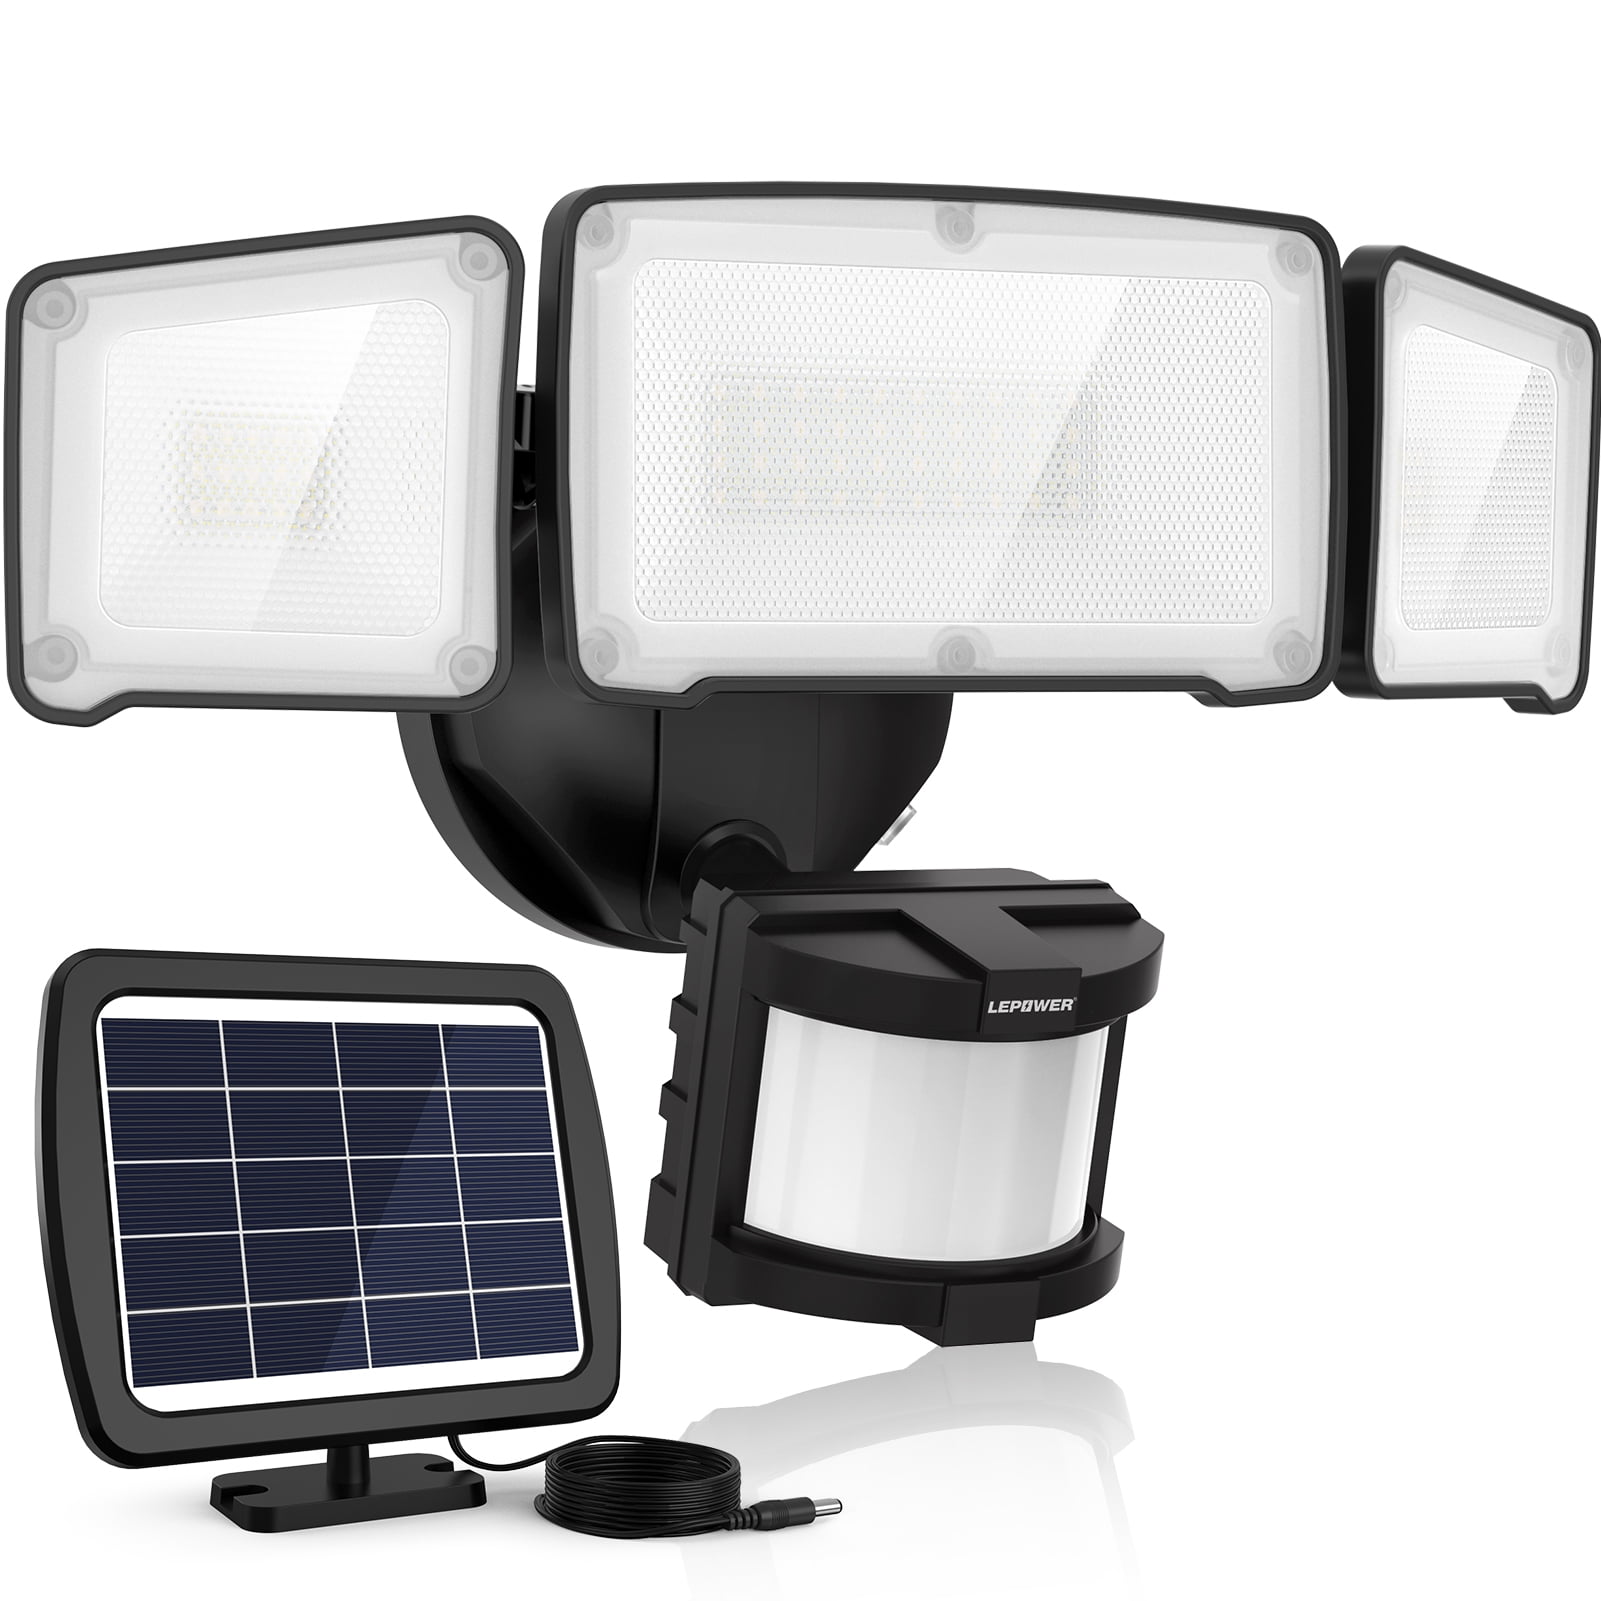 LED Solar Security Lights, Motion Sensor Light, 5500K, IP65 Waterproof, 3 Adjustable Heads for Yard, Garage, Black - Walmart.com